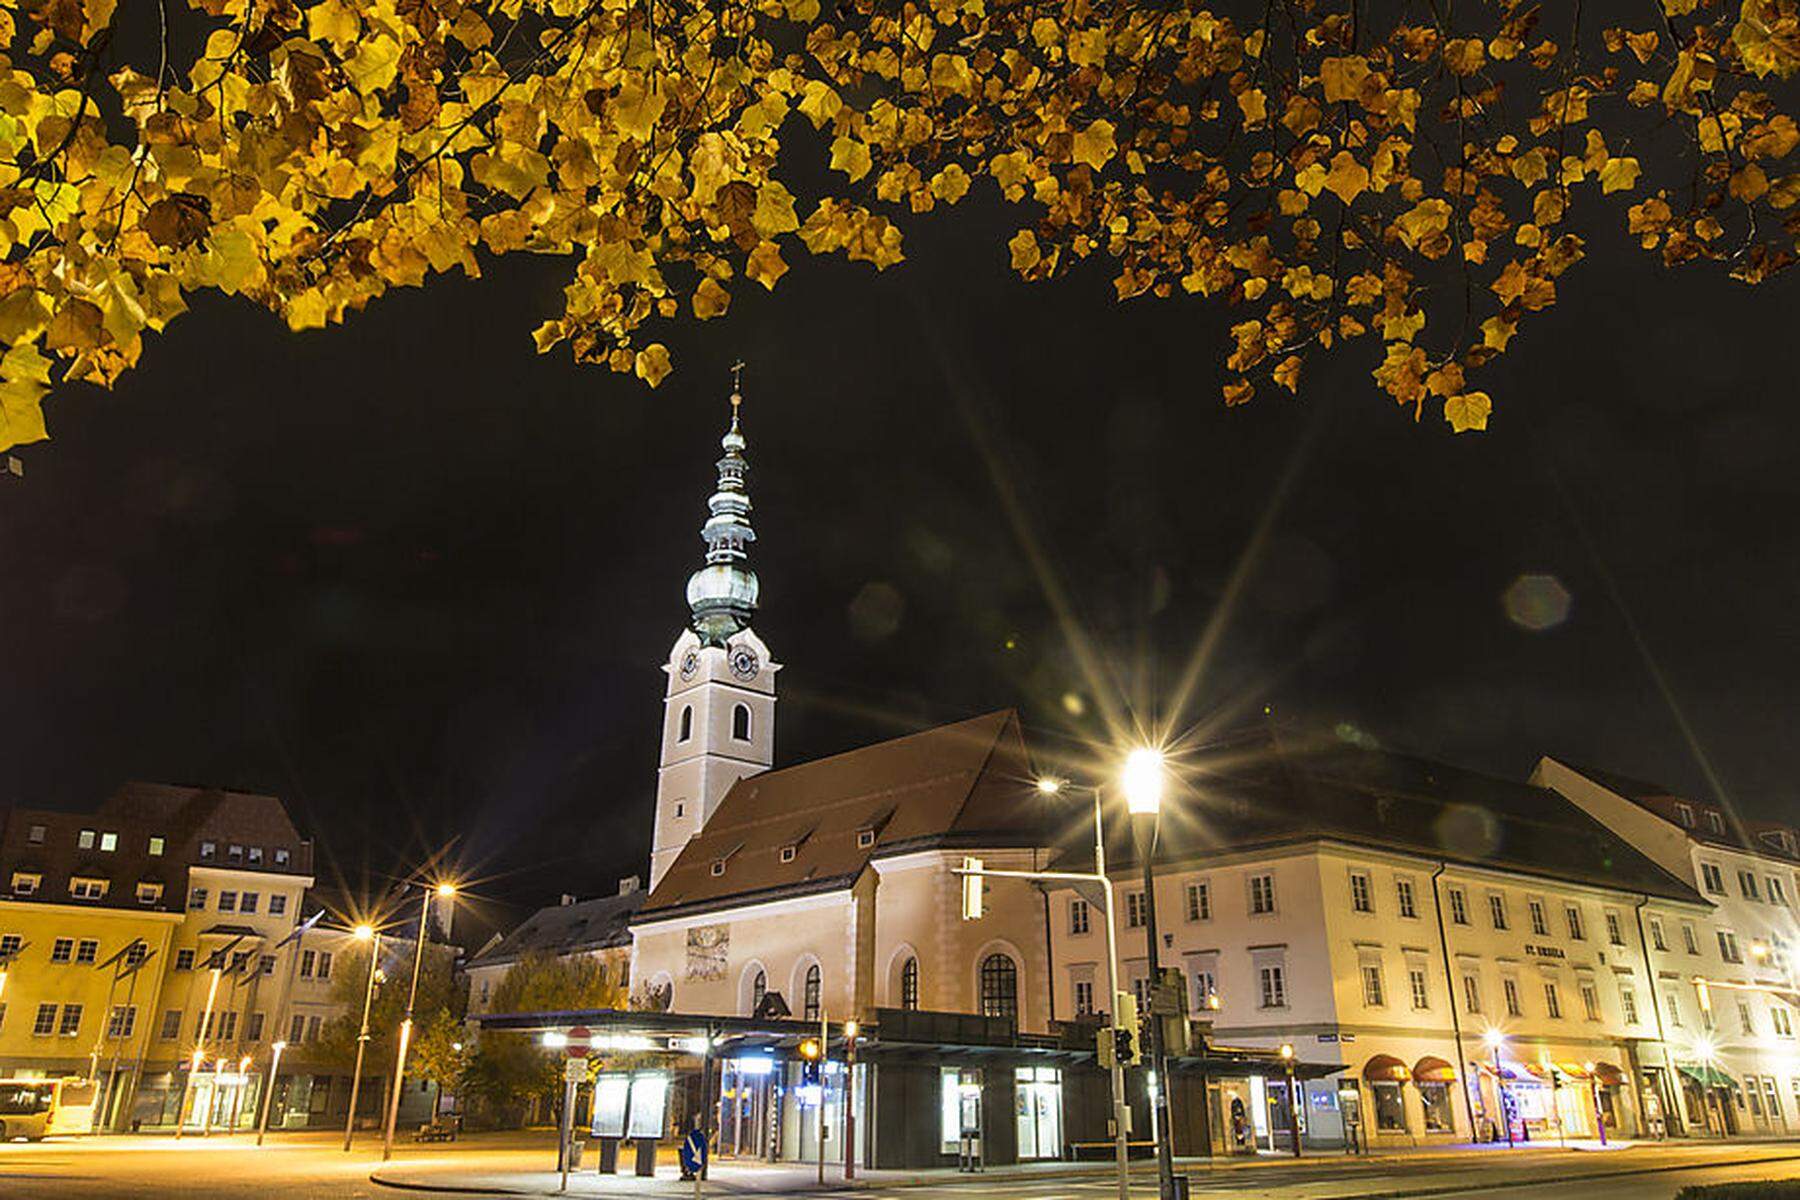 Nach Kirchenverkauf in Graz: Erhalten oder zusperren? Kirche in Kärnten prüft Gebäude